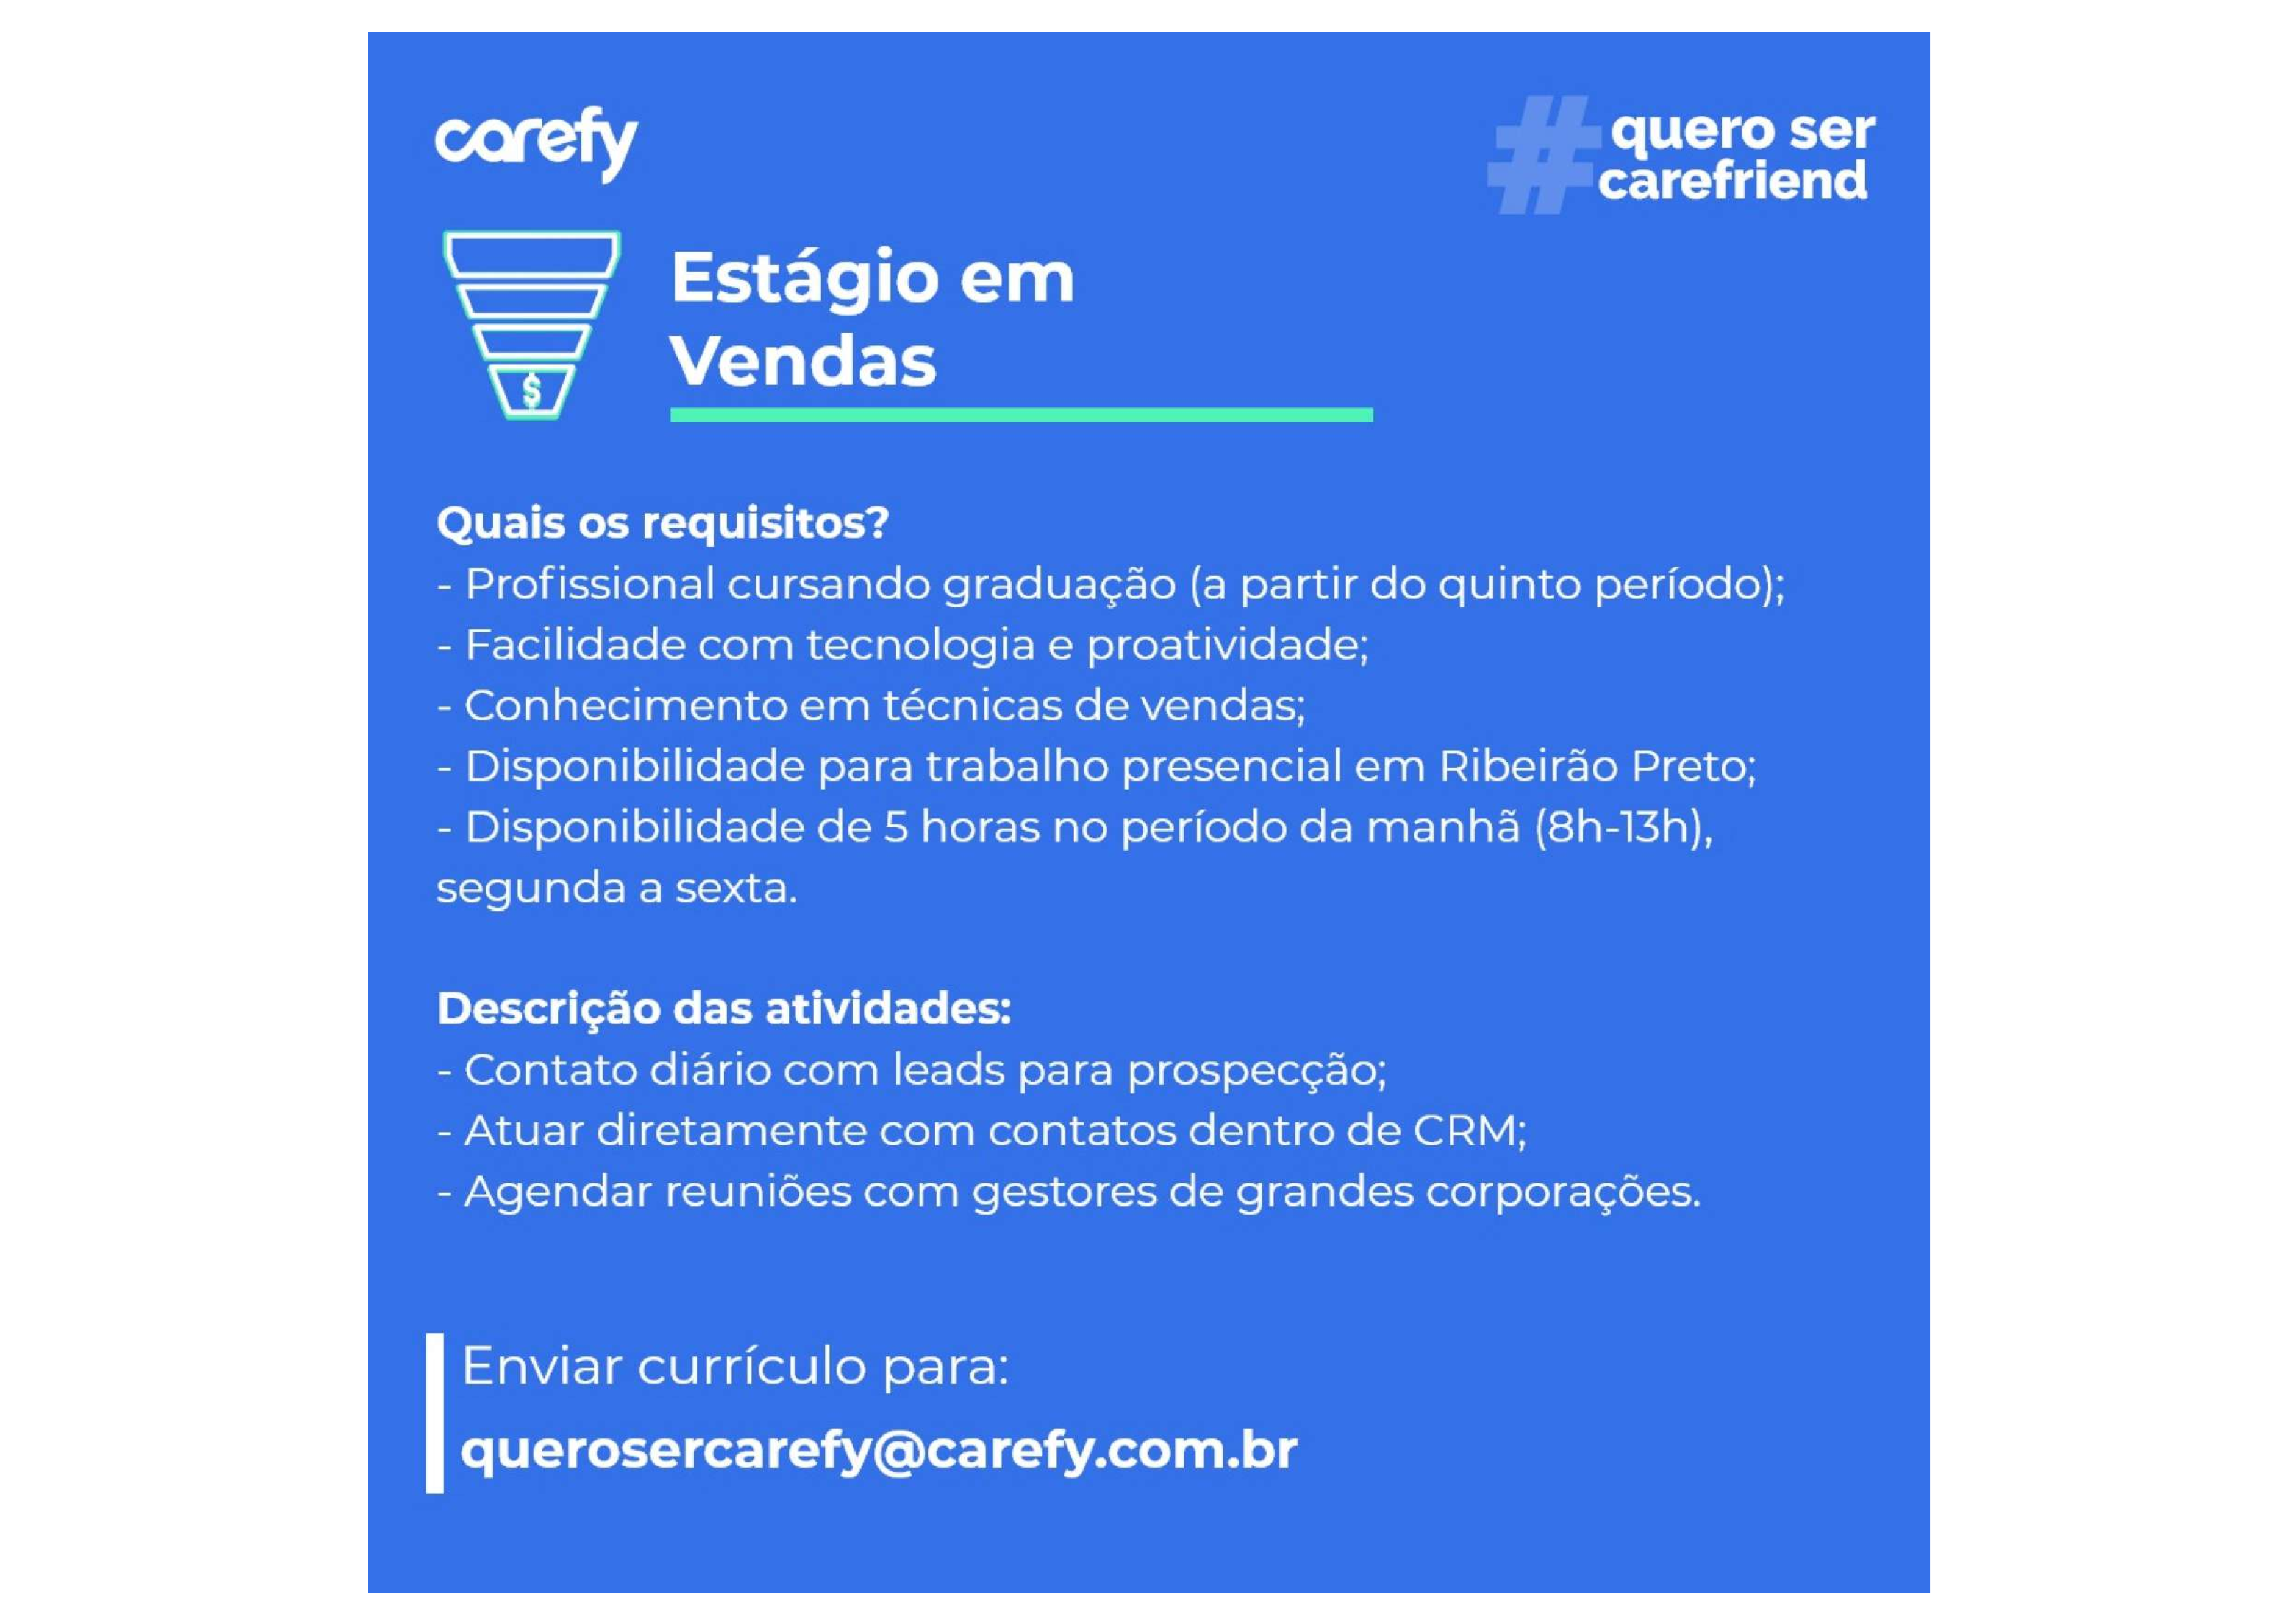 Carefy-Vendas_compressed.png